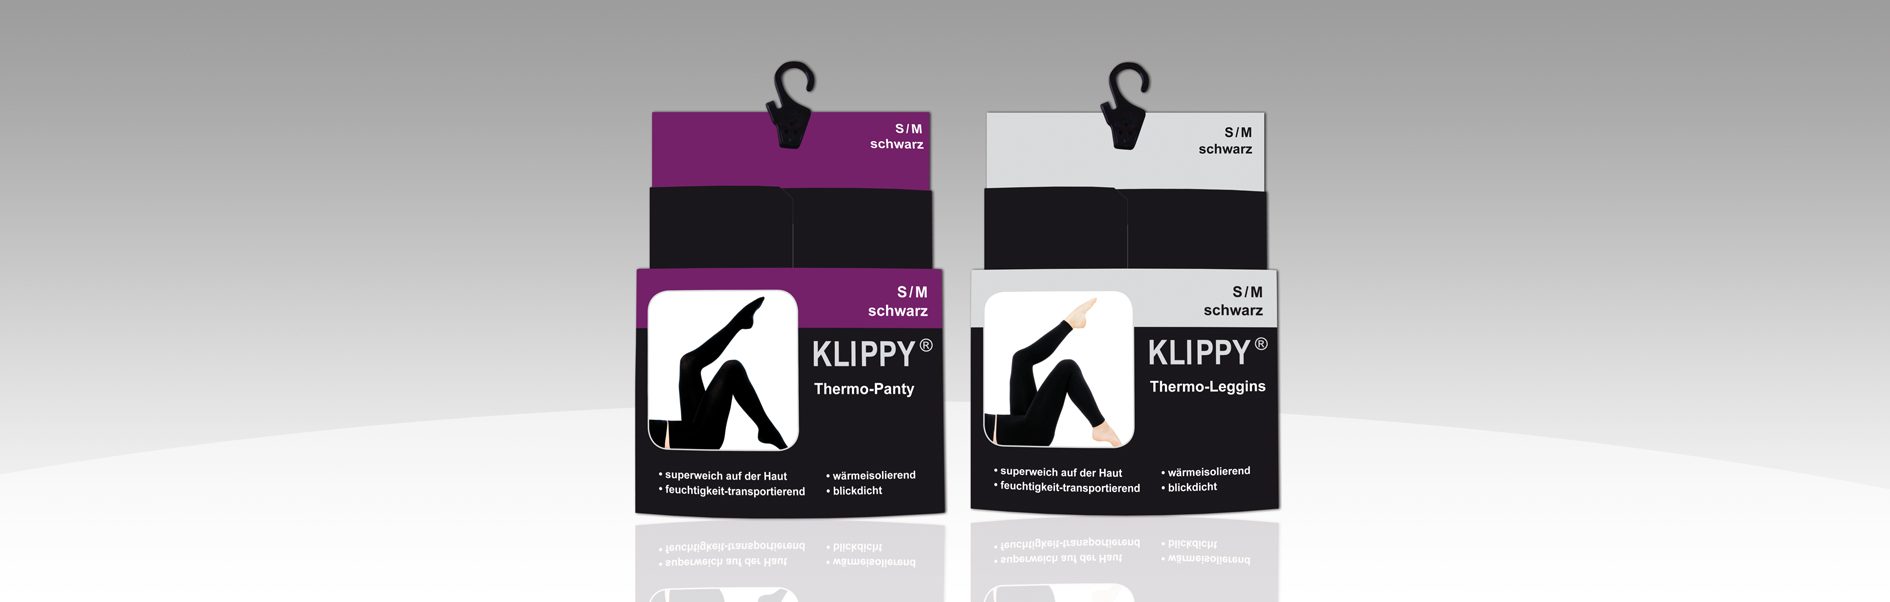 Hier sind die Verpackungen von Klippy dargestellt.